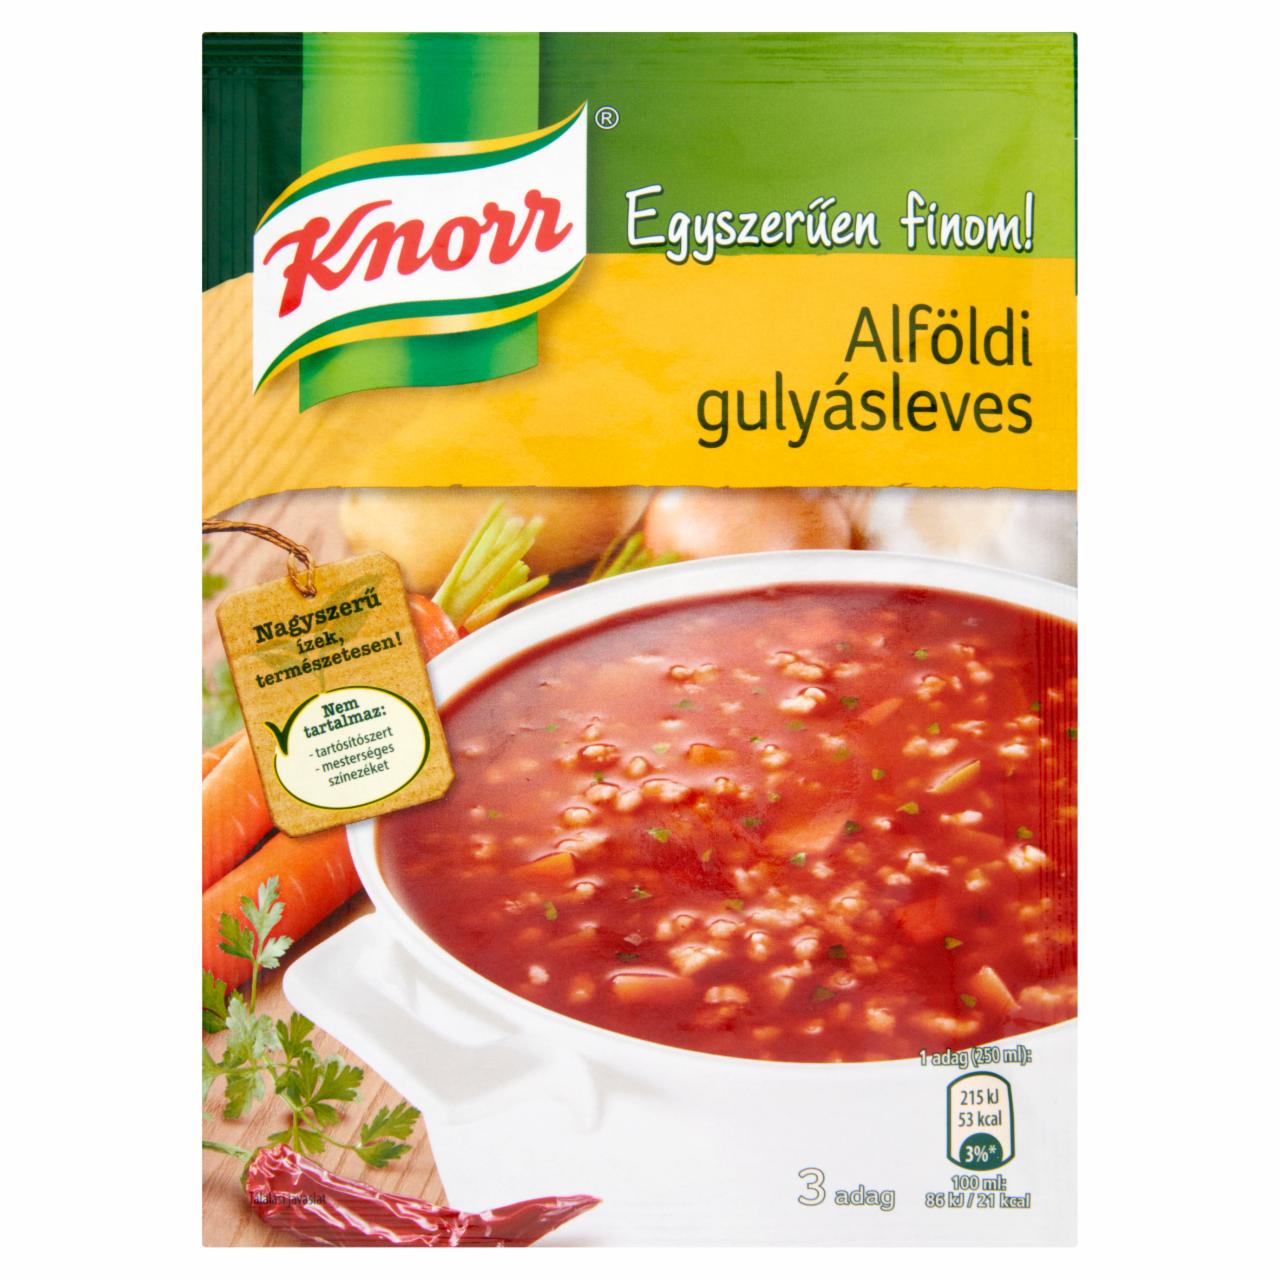 Képek - Knorr Egyszerűen finom! alföldi gulyásleves 50 g